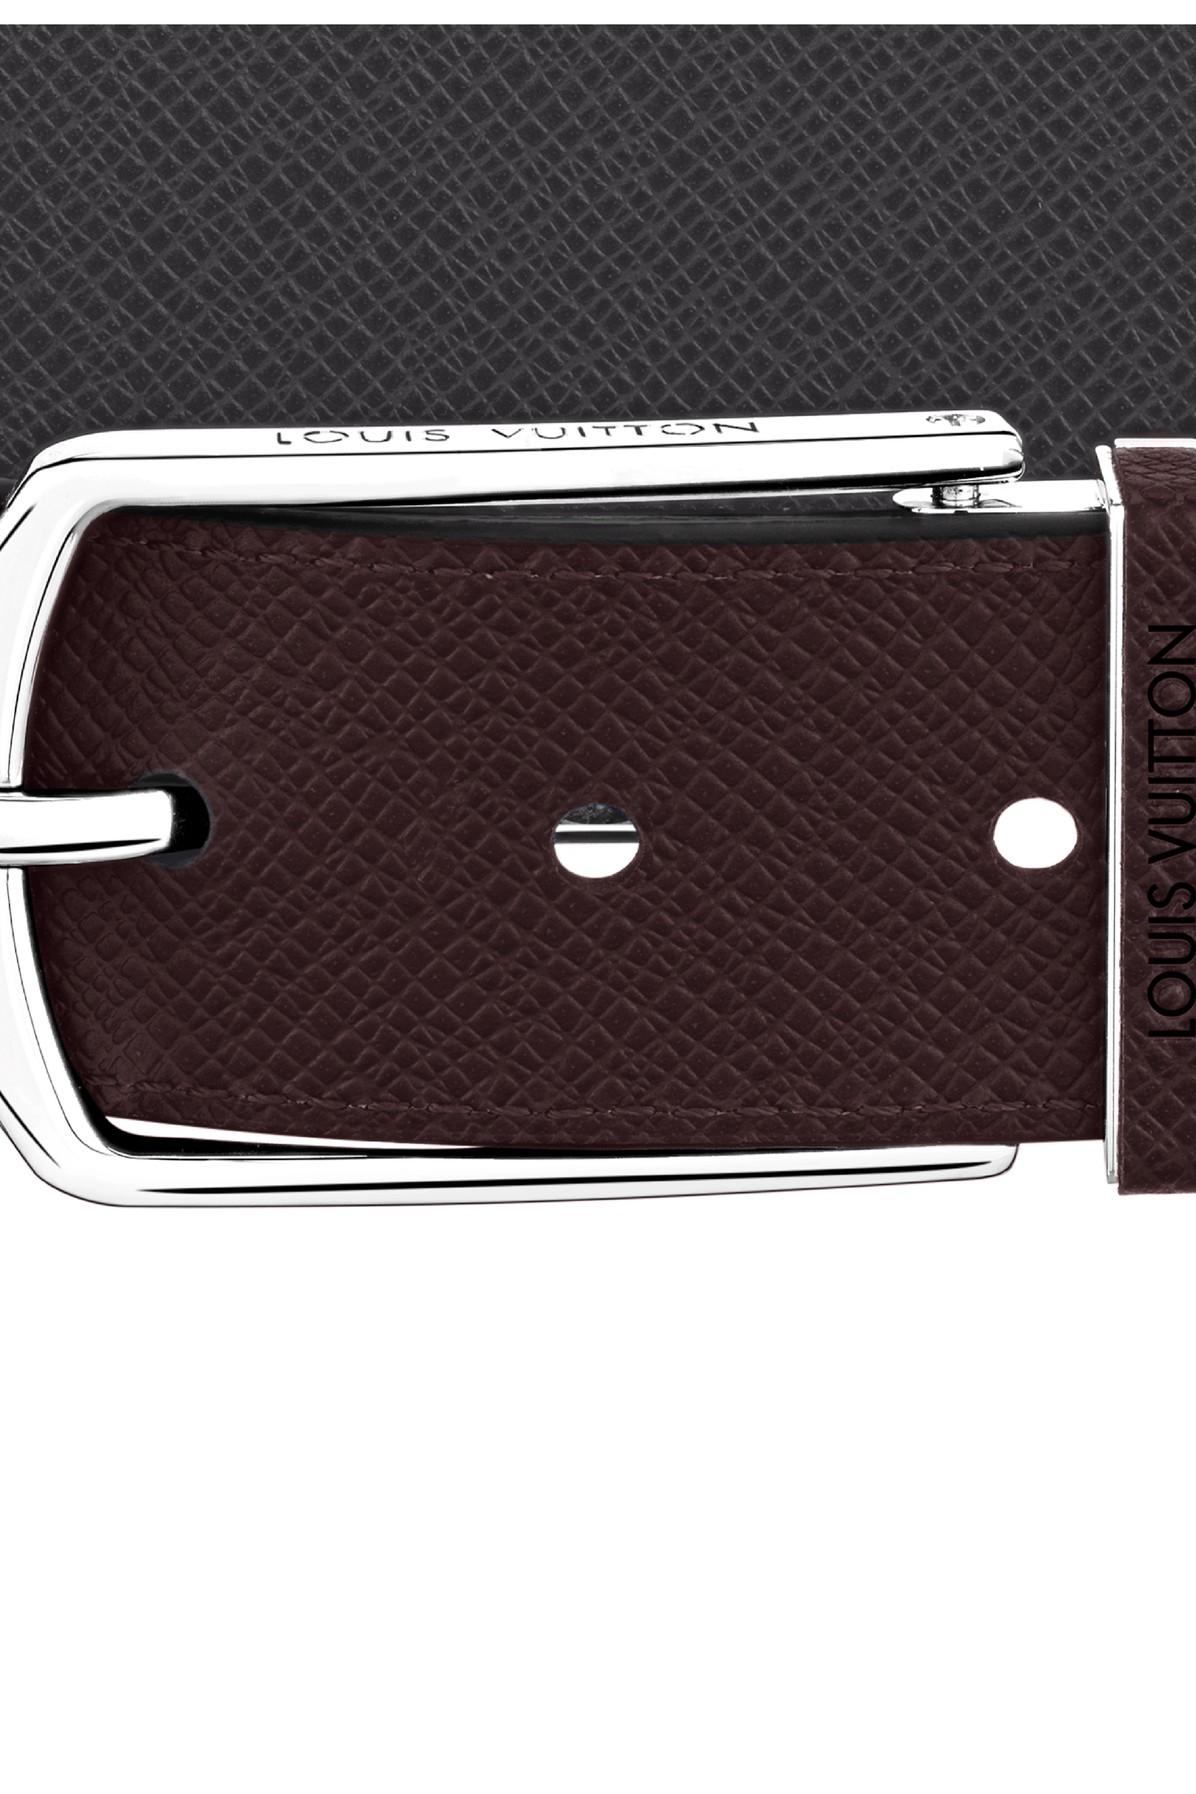 Thắt lưng LV Slender 35mm Reversible Damier khóa trắng siêu cấp